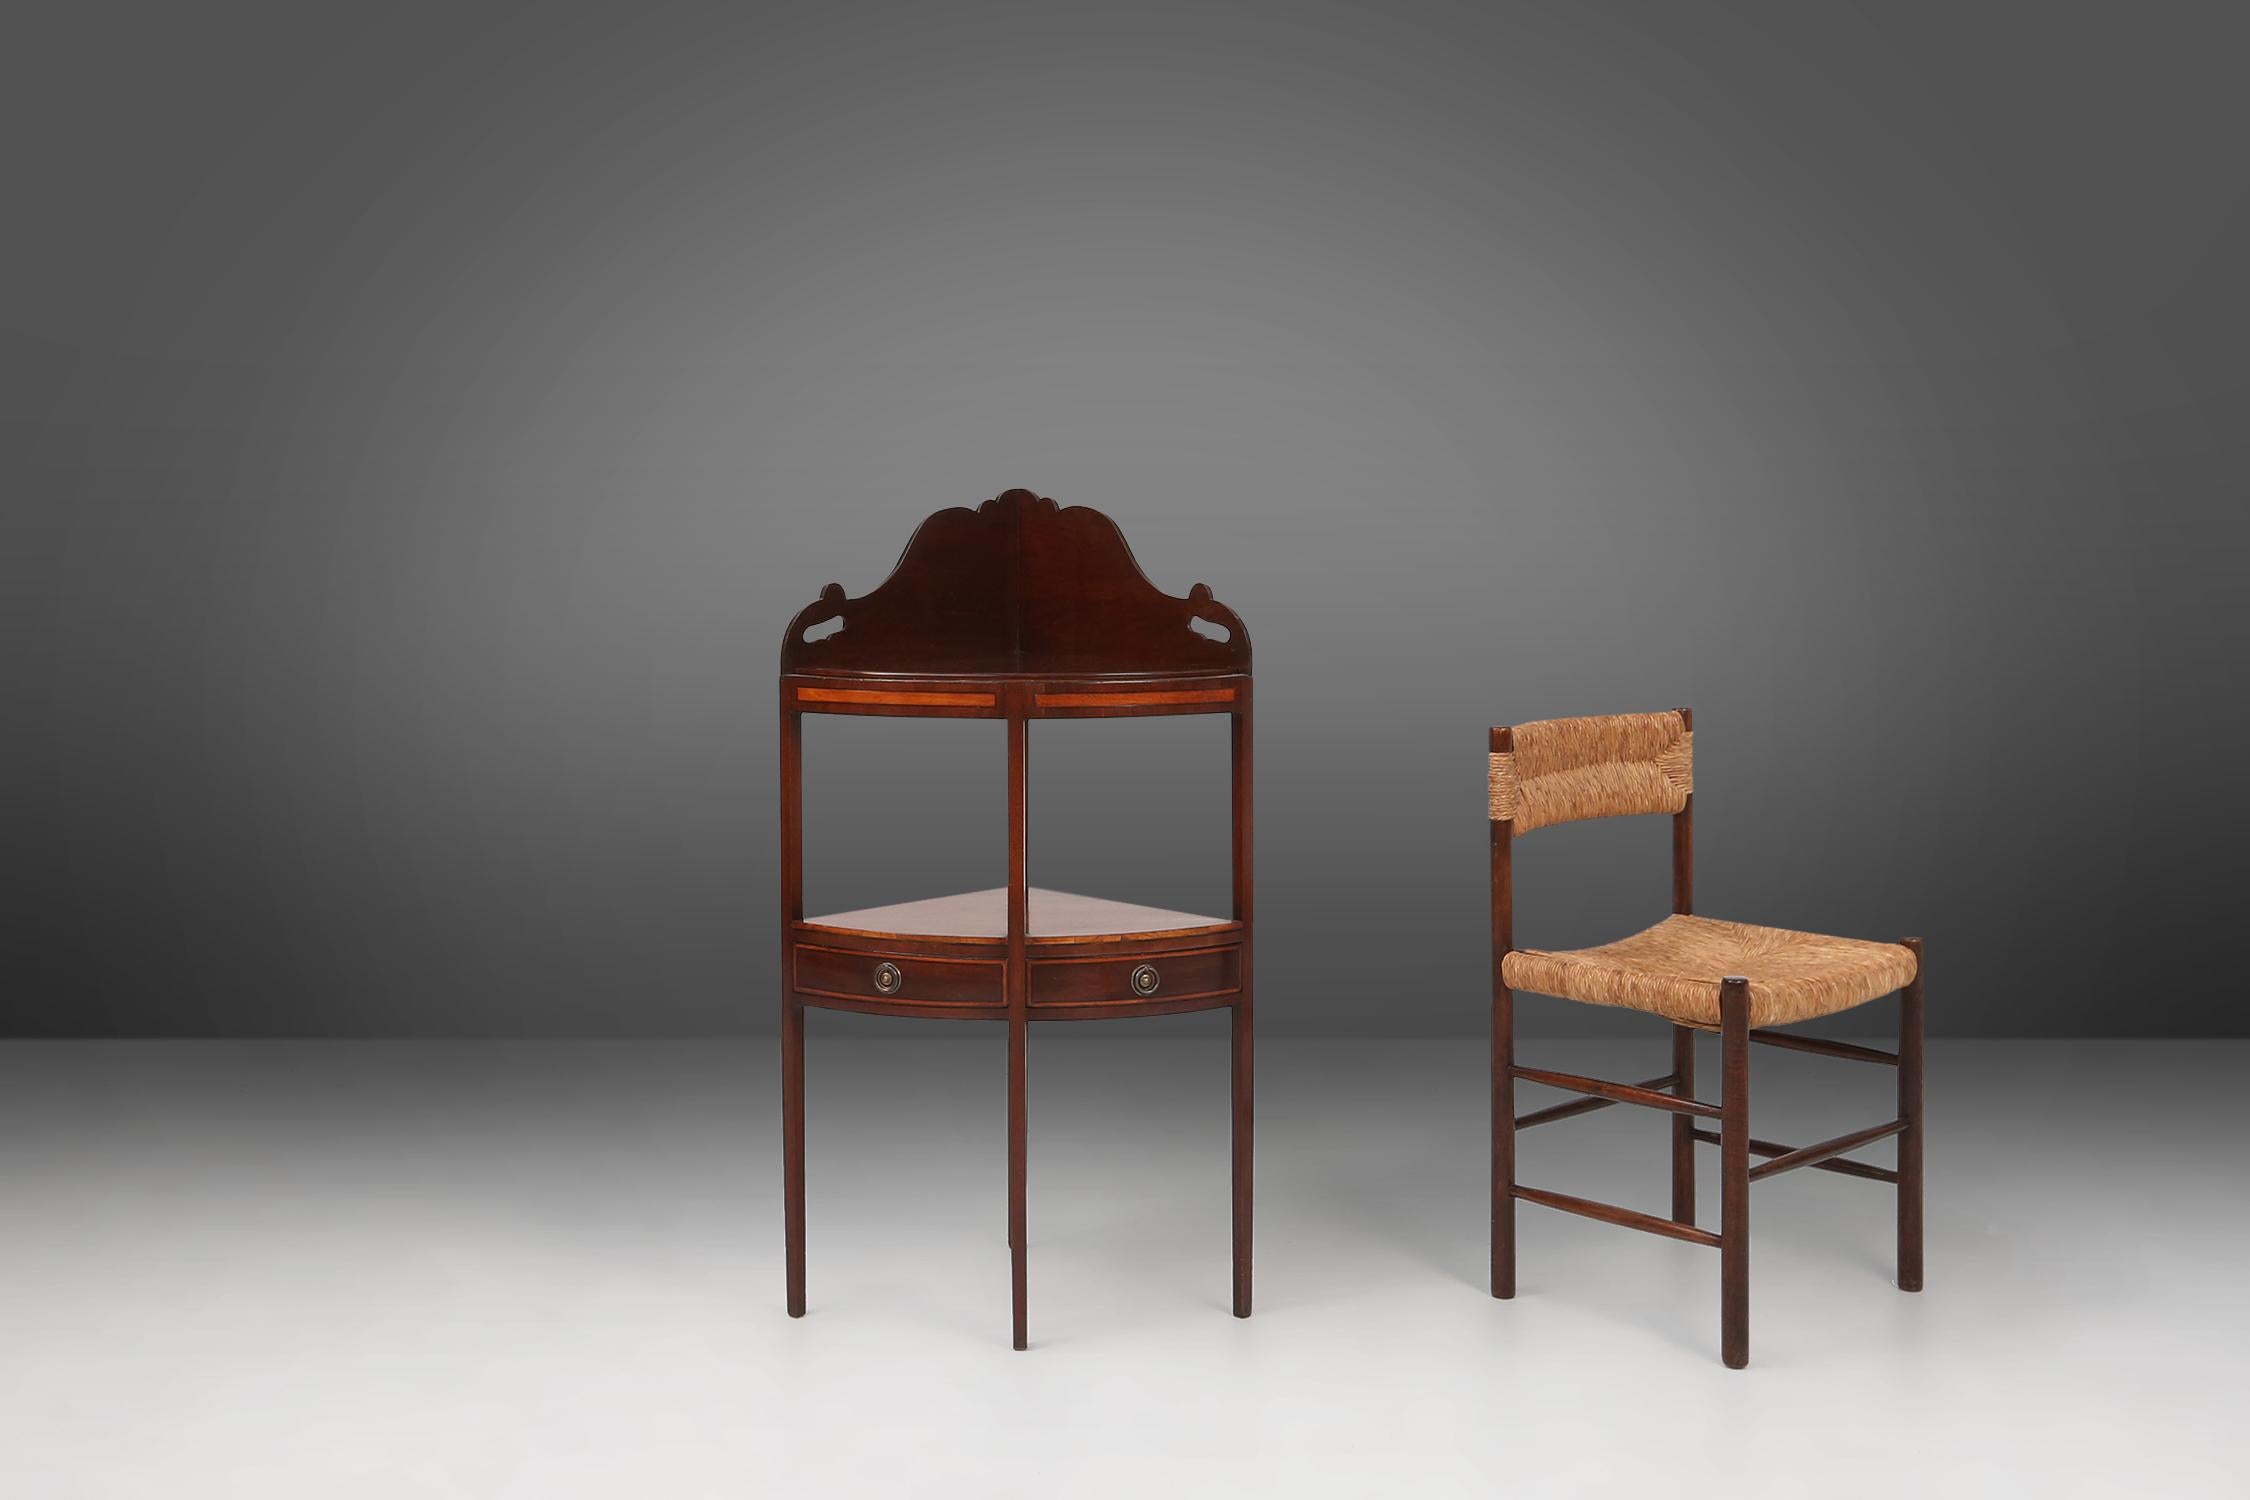 France / 1850 / meuble d'angle / bois / antique

Elegant et décoratif meuble d'angle ancien fabriqué en France, vers 1850. Avec ses 4 pieds hauts et sa façade arquée, ce meuble d'angle exquis est un véritable témoignage de l'élégance intemporelle de